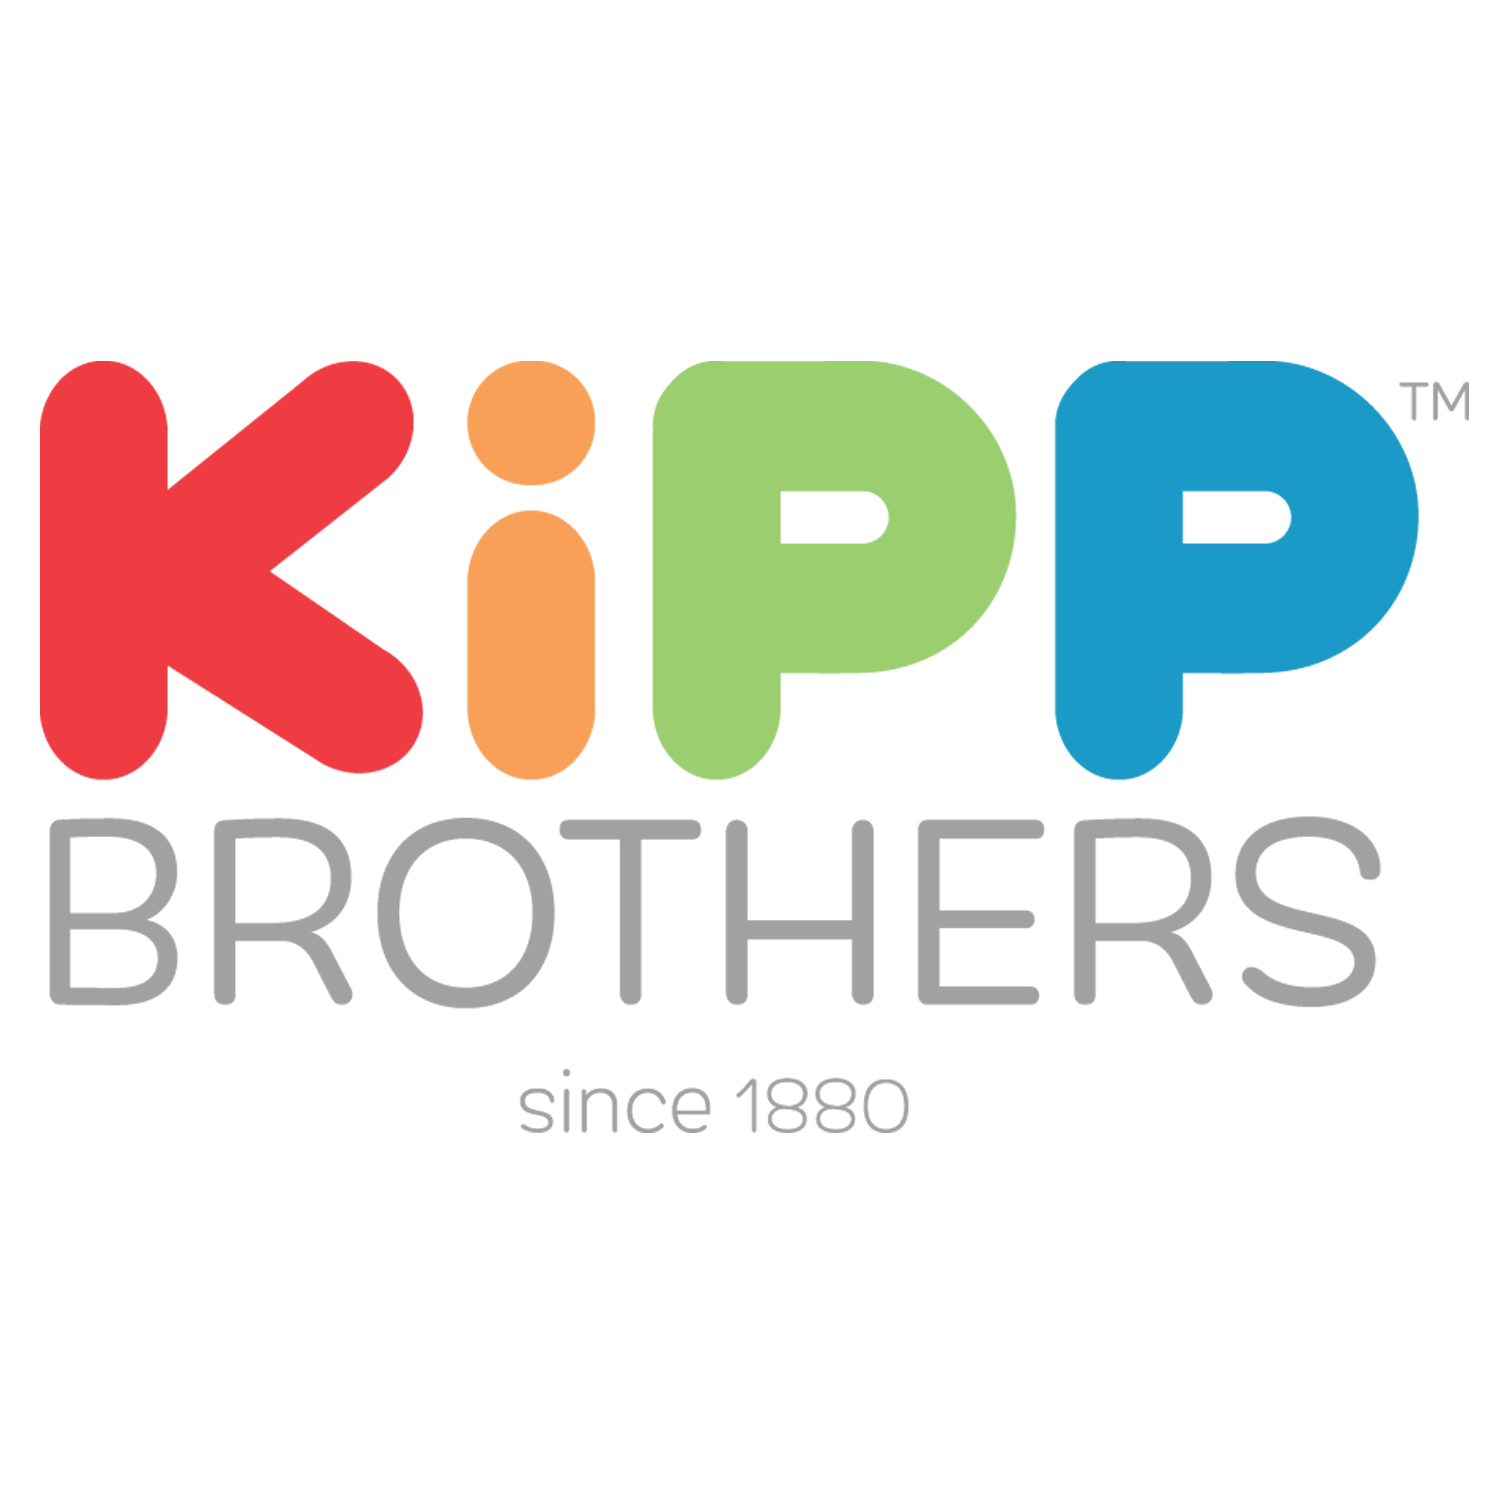 Kipp Logo - Wholesale Toy, Novelty & Party Supplies: Kipp Brothers